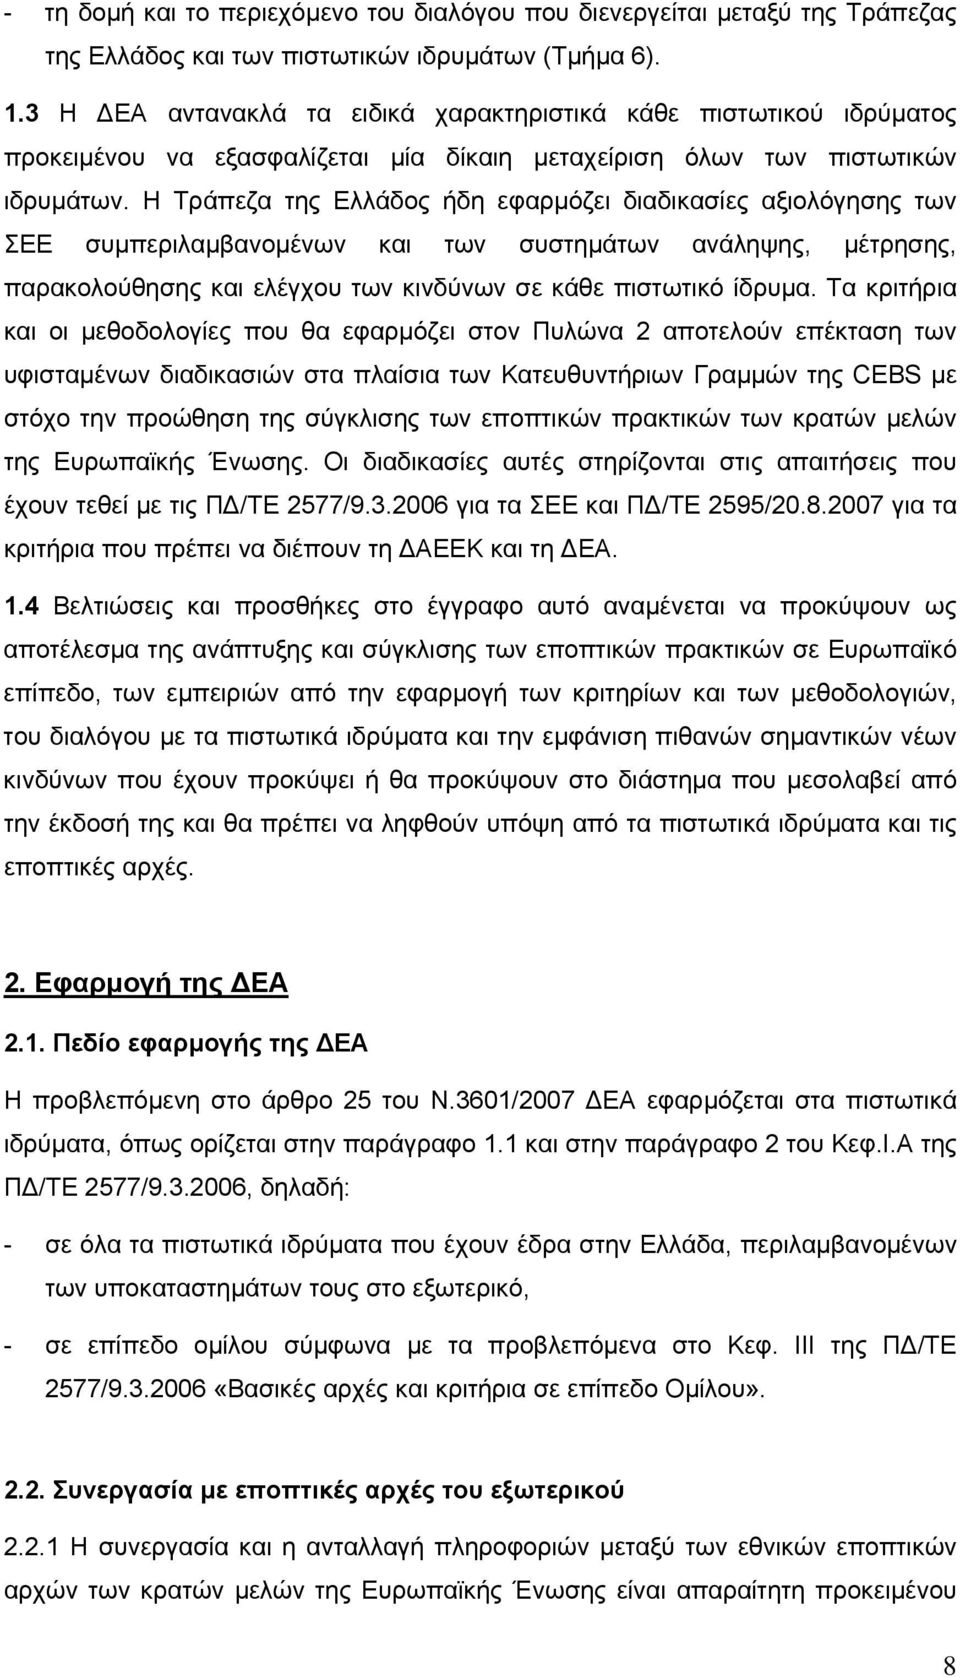 Η Τράπεζα της Ελλάδος ήδη εφαρµόζει διαδικασίες αξιολόγησης των ΣΕΕ συµπεριλαµβανοµένων και των συστηµάτων ανάληψης, µέτρησης, παρακολούθησης και ελέγχου των κινδύνων σε κάθε πιστωτικό ίδρυµα.